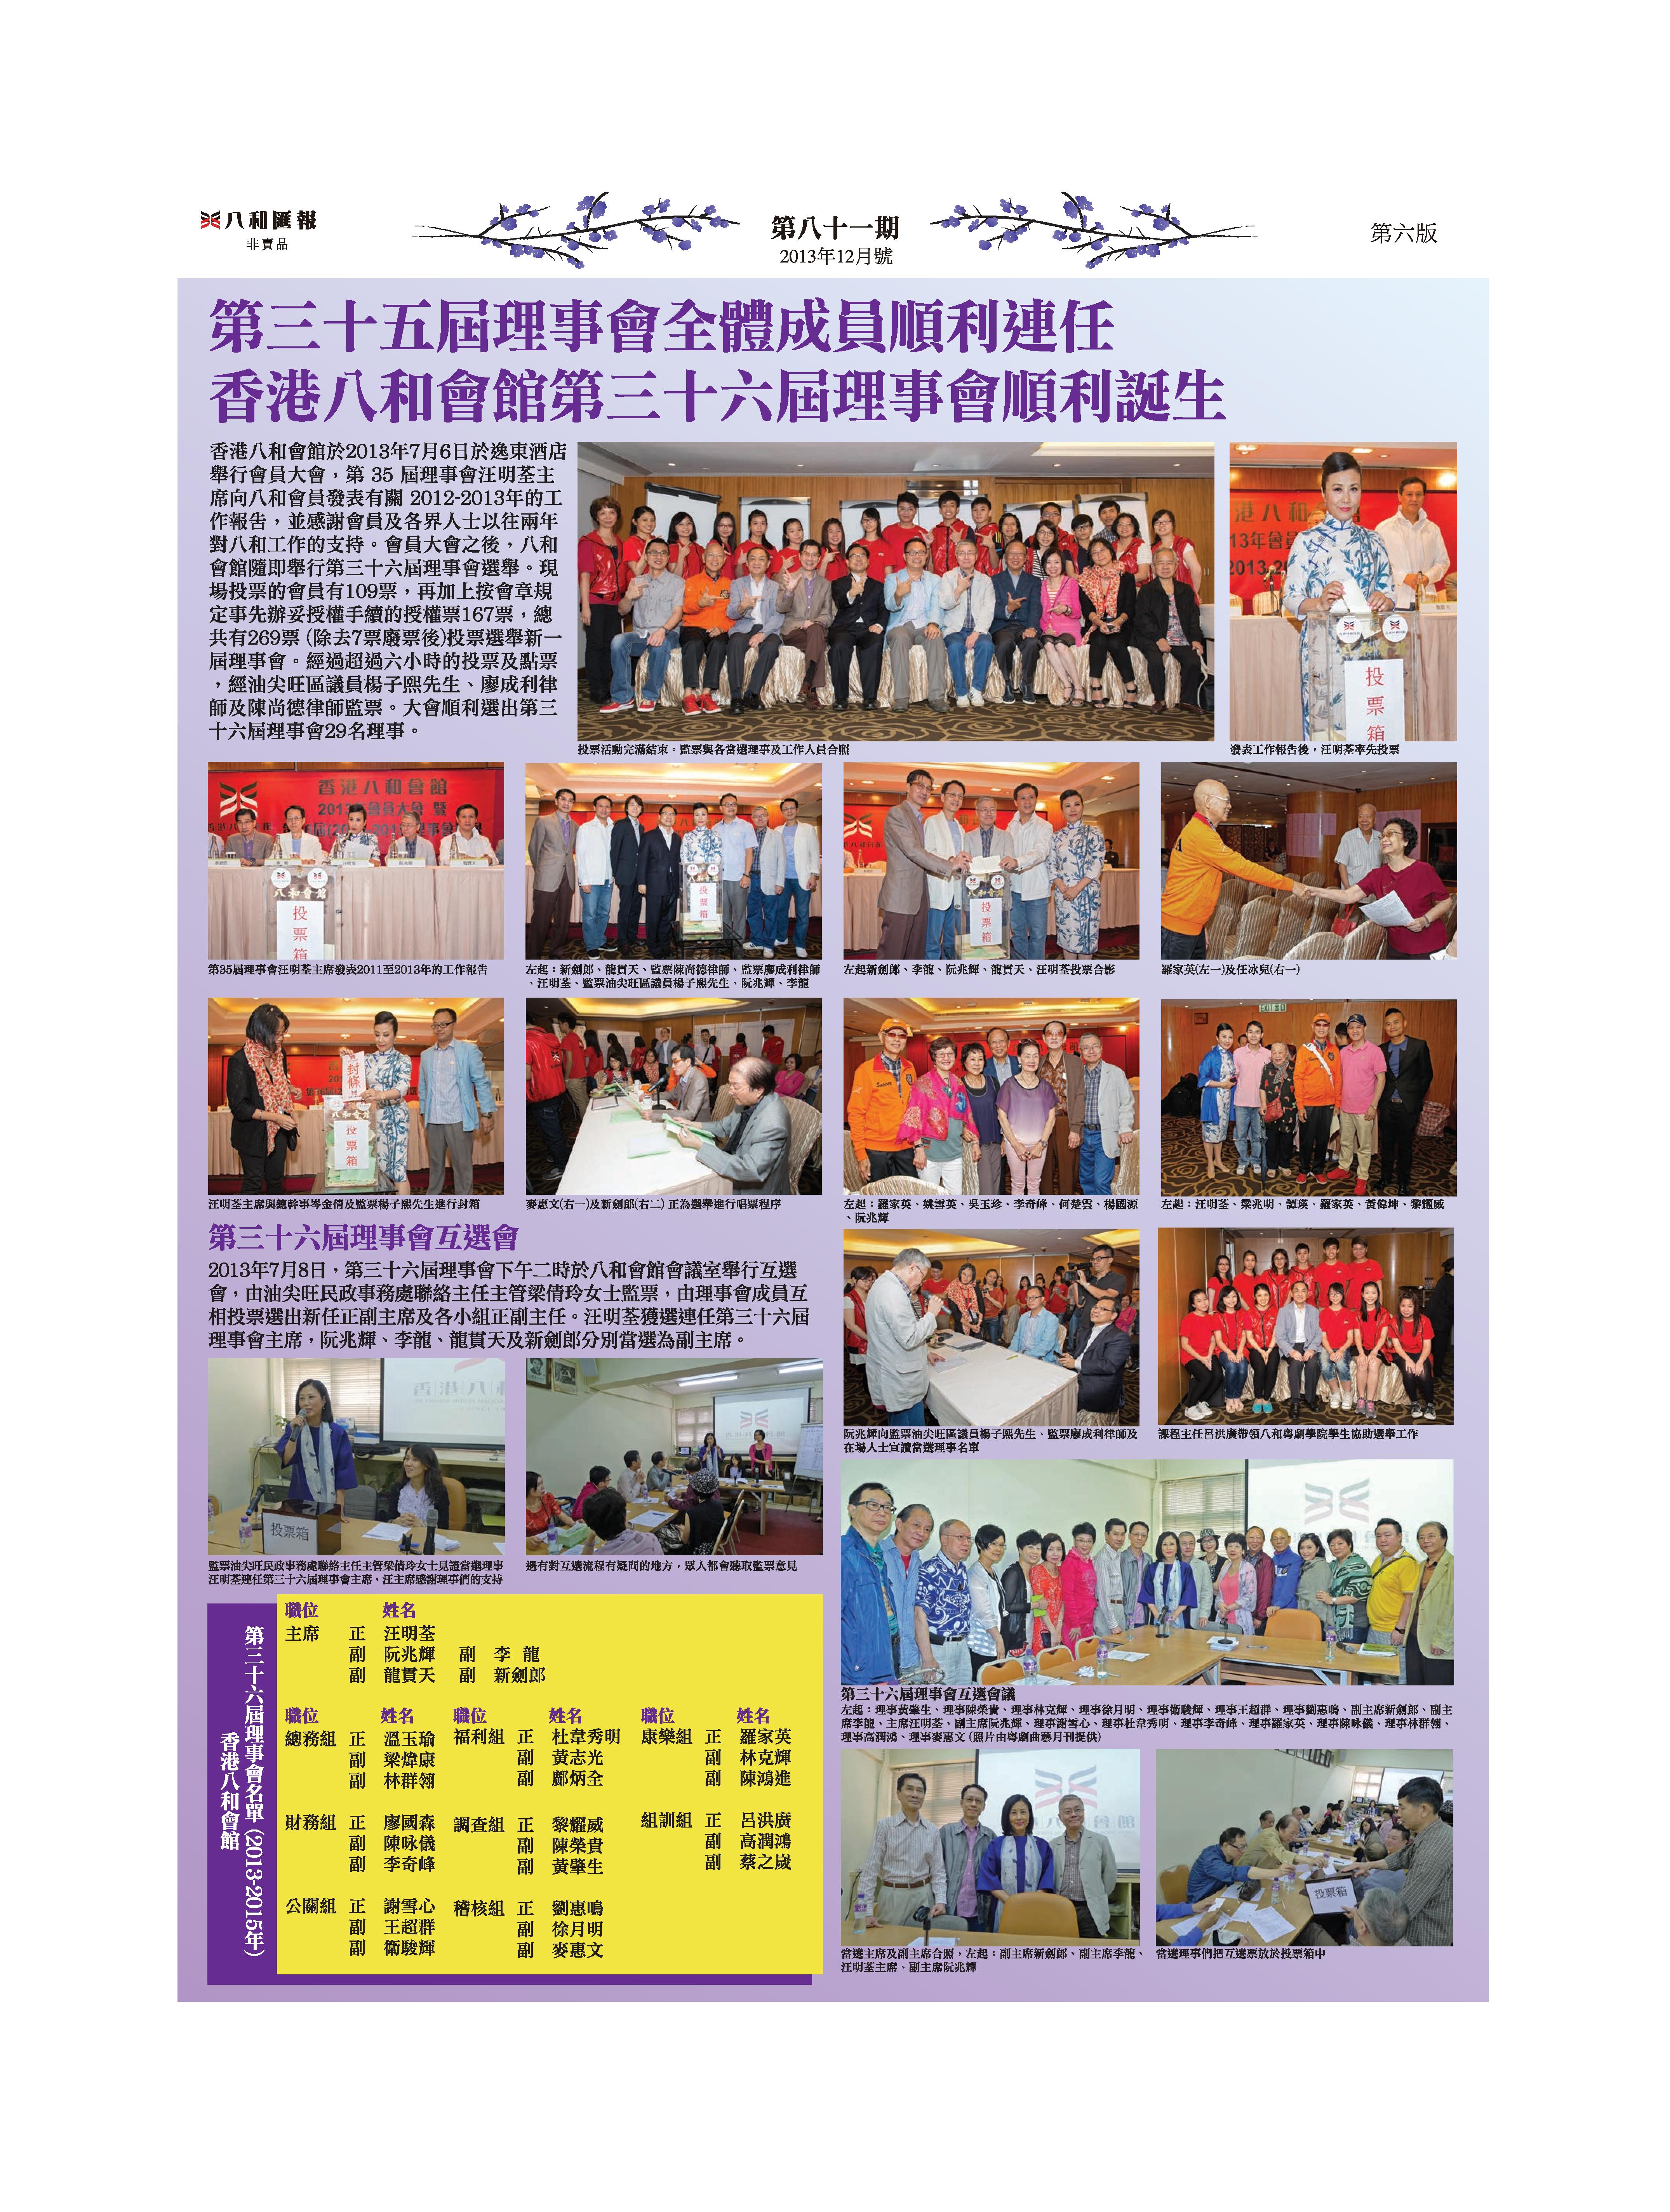 第三十五屆理事會全體成員順利連任 香港八和會館第三十六屆理事會順利誕生